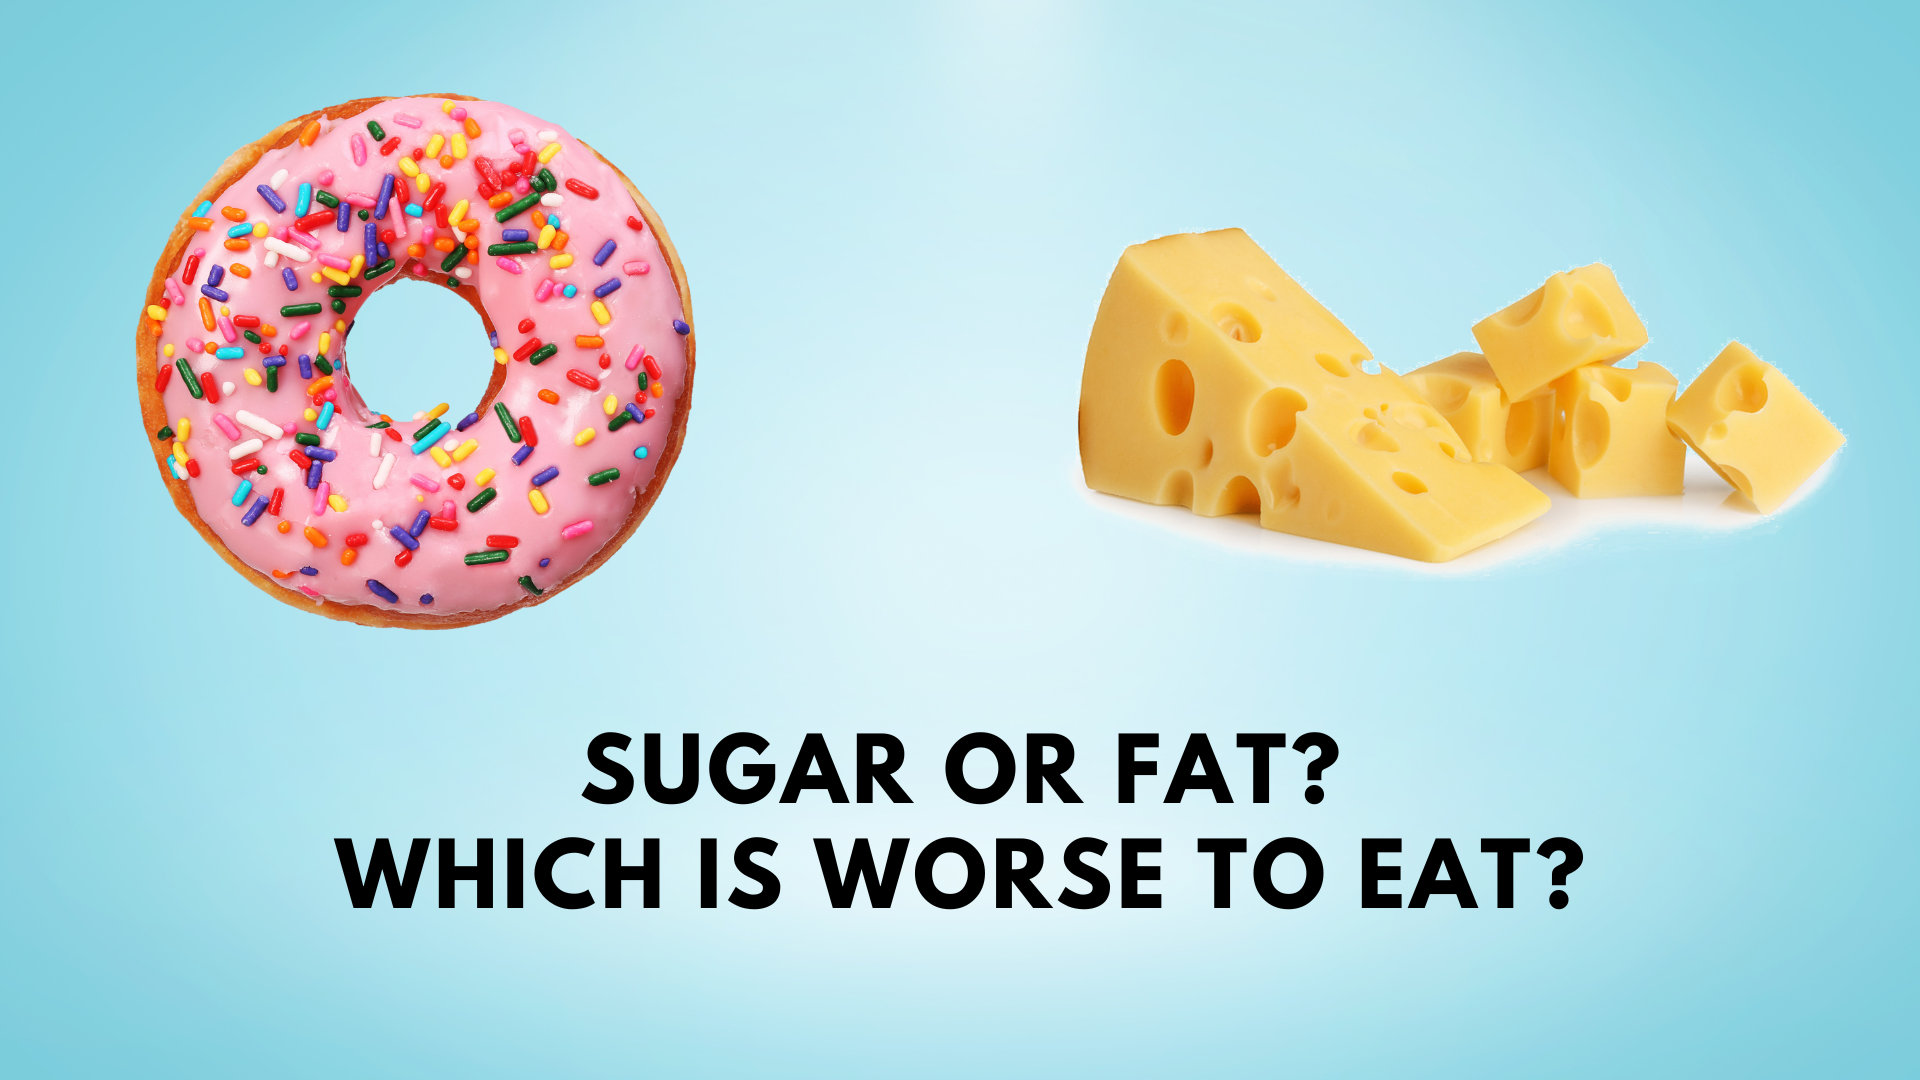 Sugar or fat